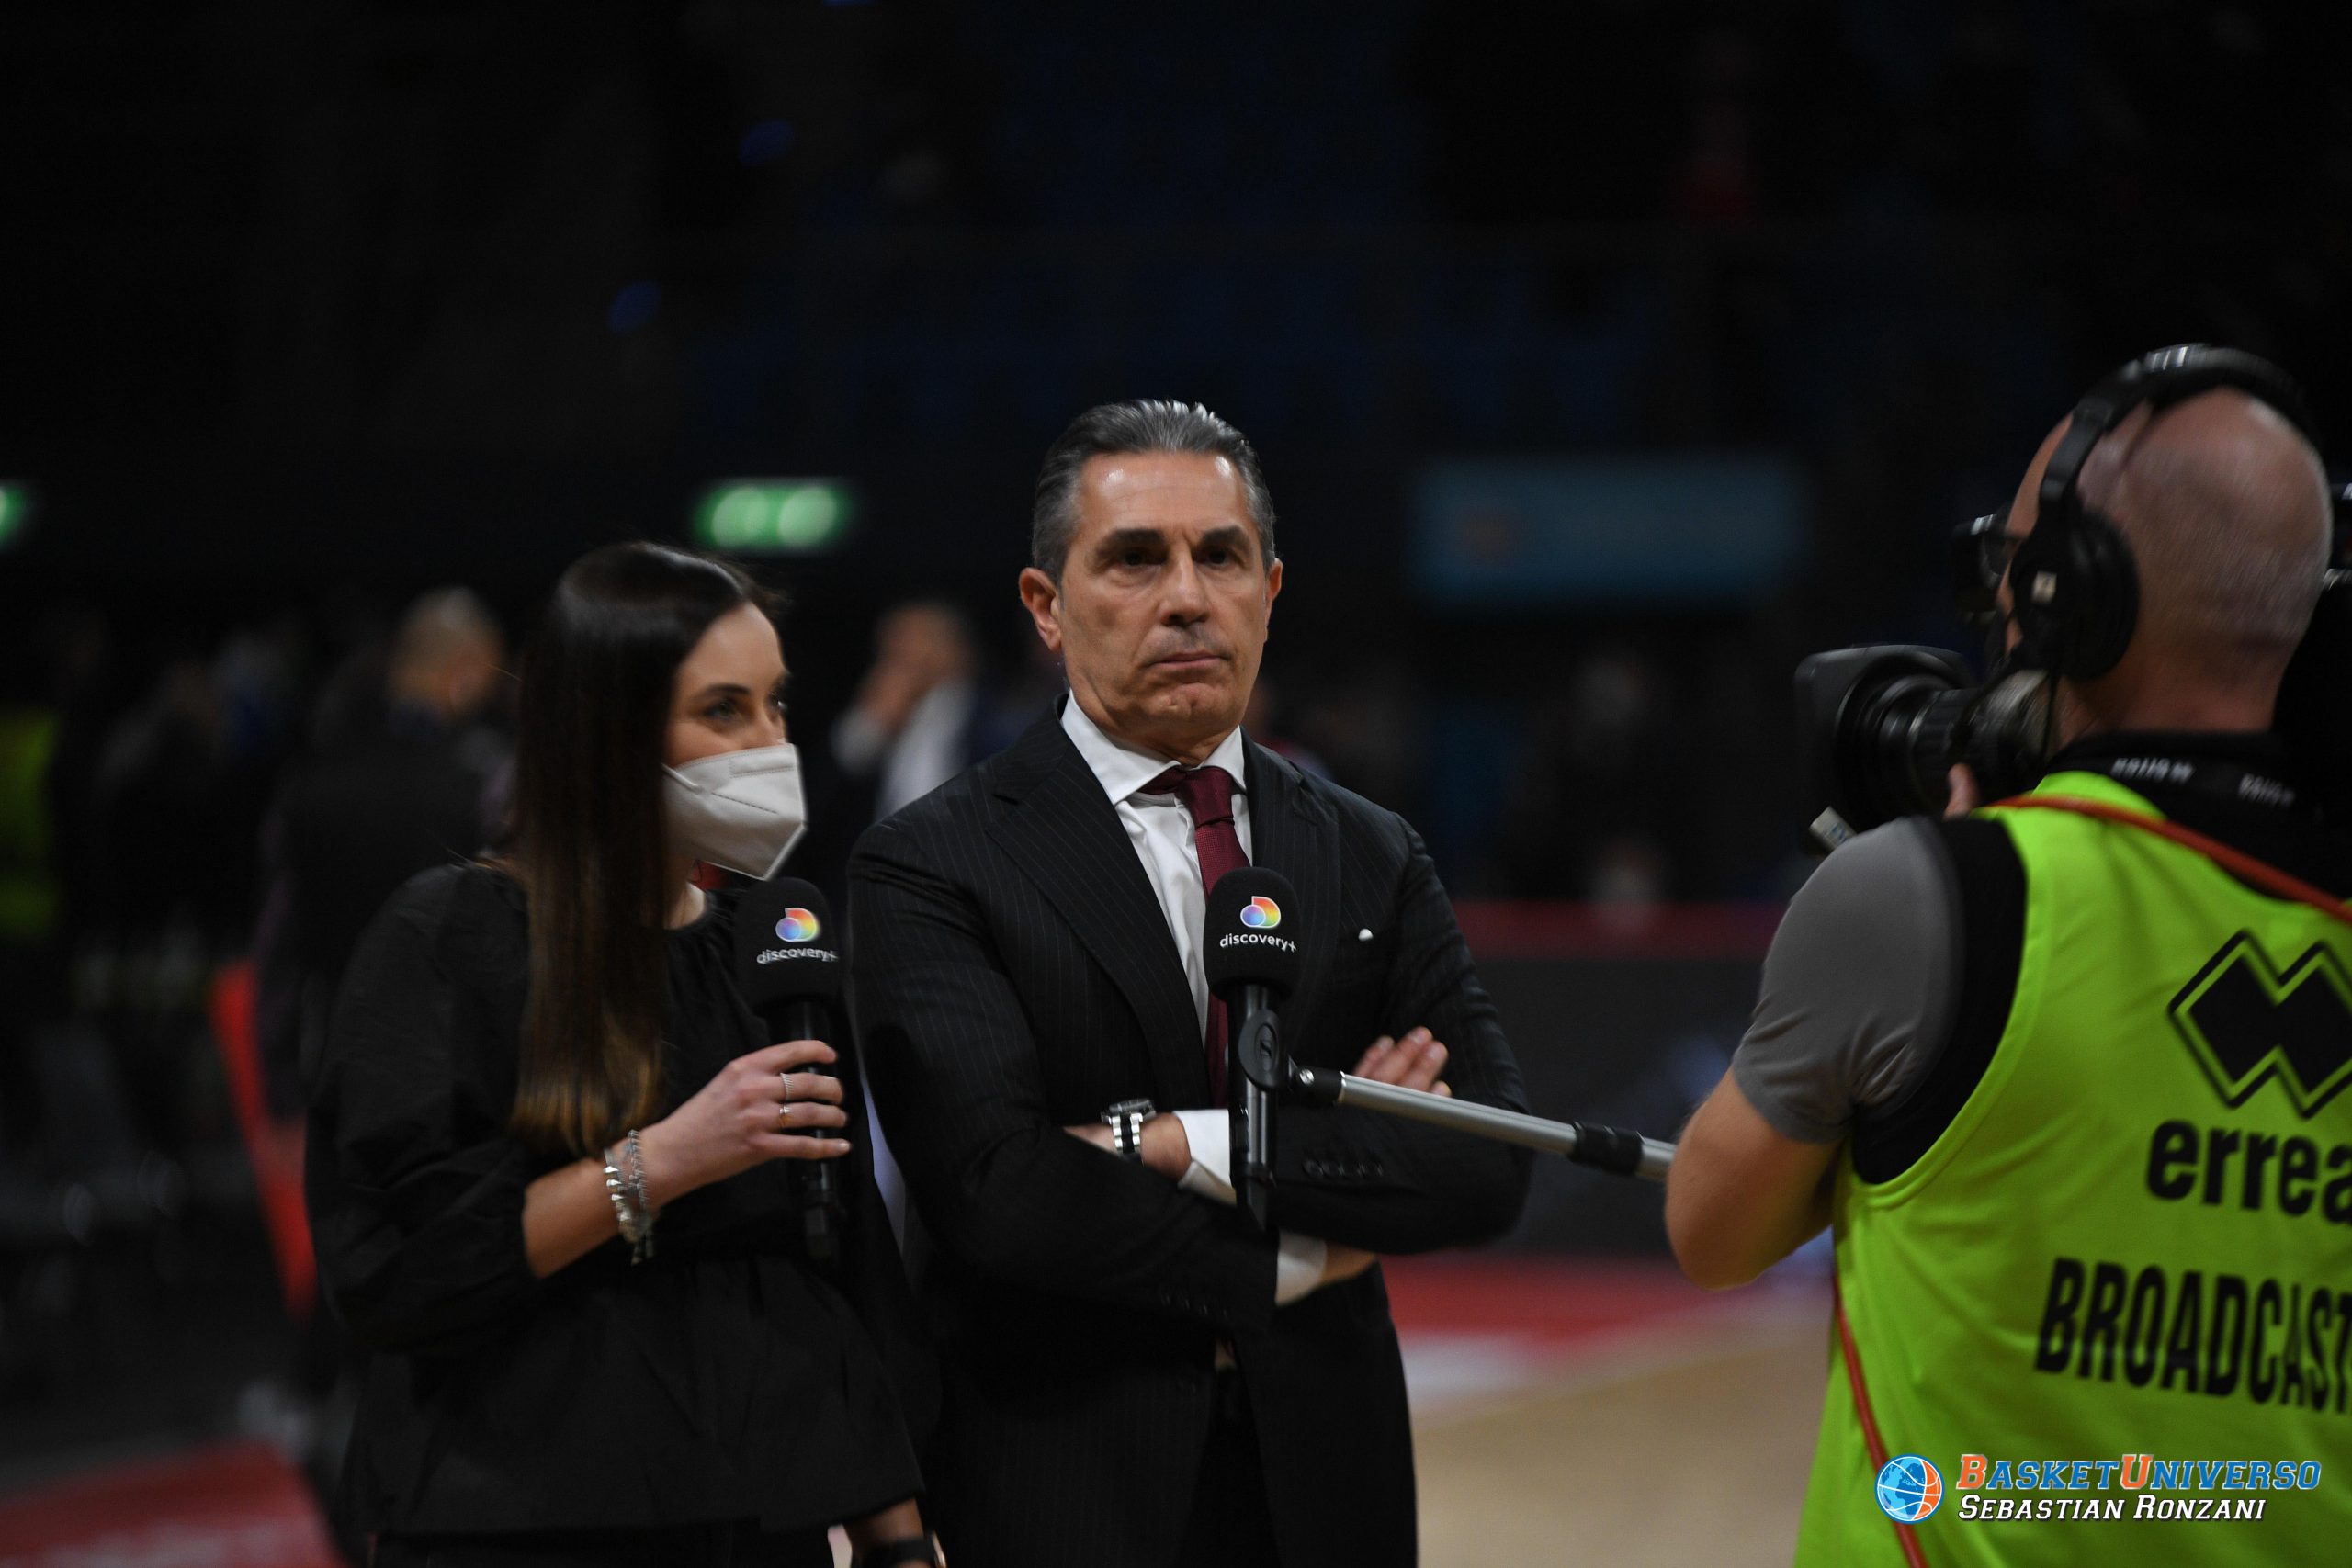 scariolo virtus bologna EuroLeague Head Coaches nba milwaukee bucks